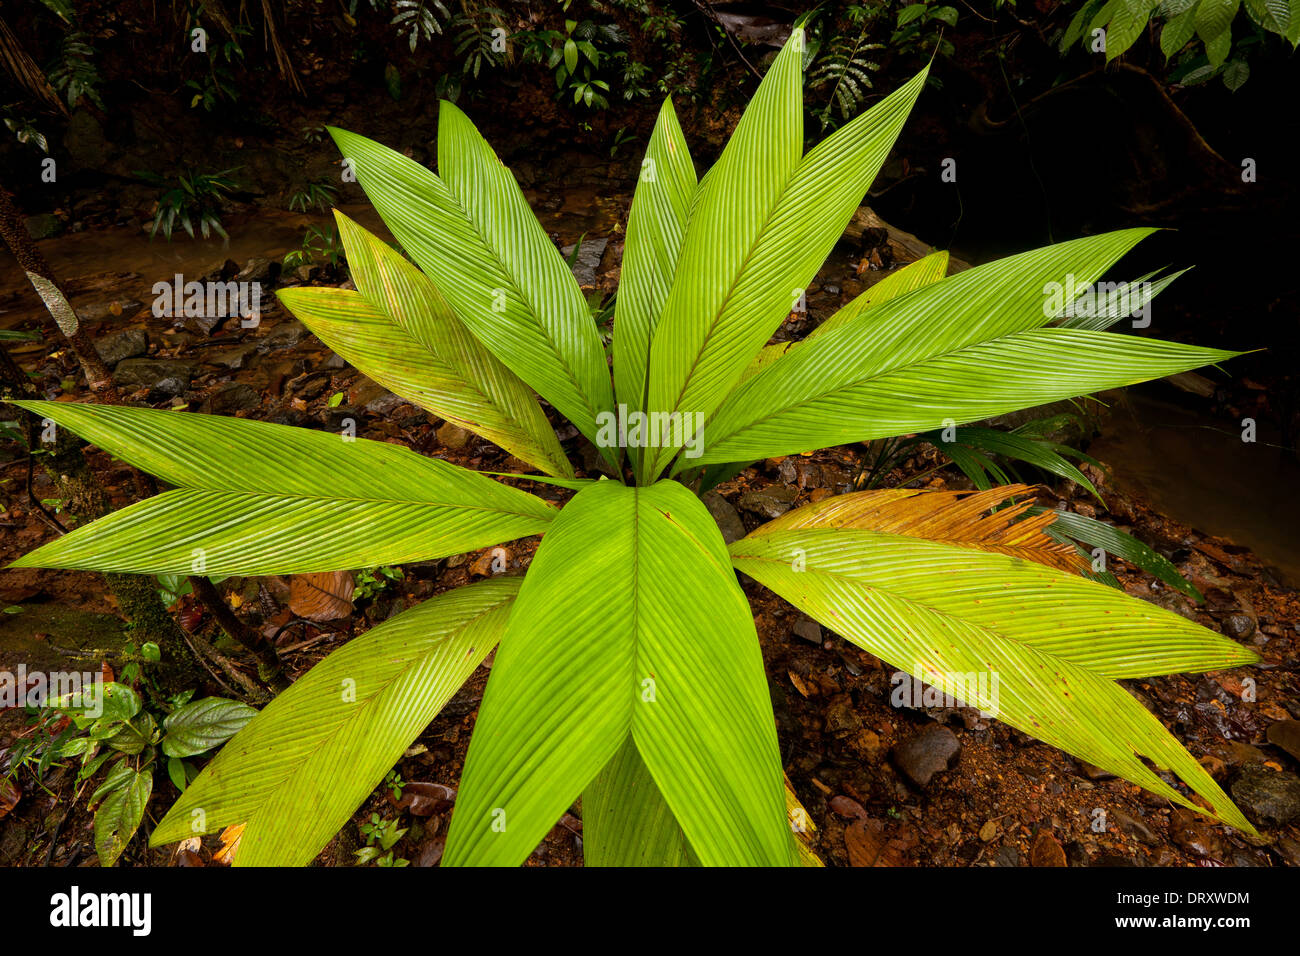 Belle plante dans l'premontane forêt tropicale humide dans la réserve naturelle de Burbayar, province de Panama, République du Panama Banque D'Images